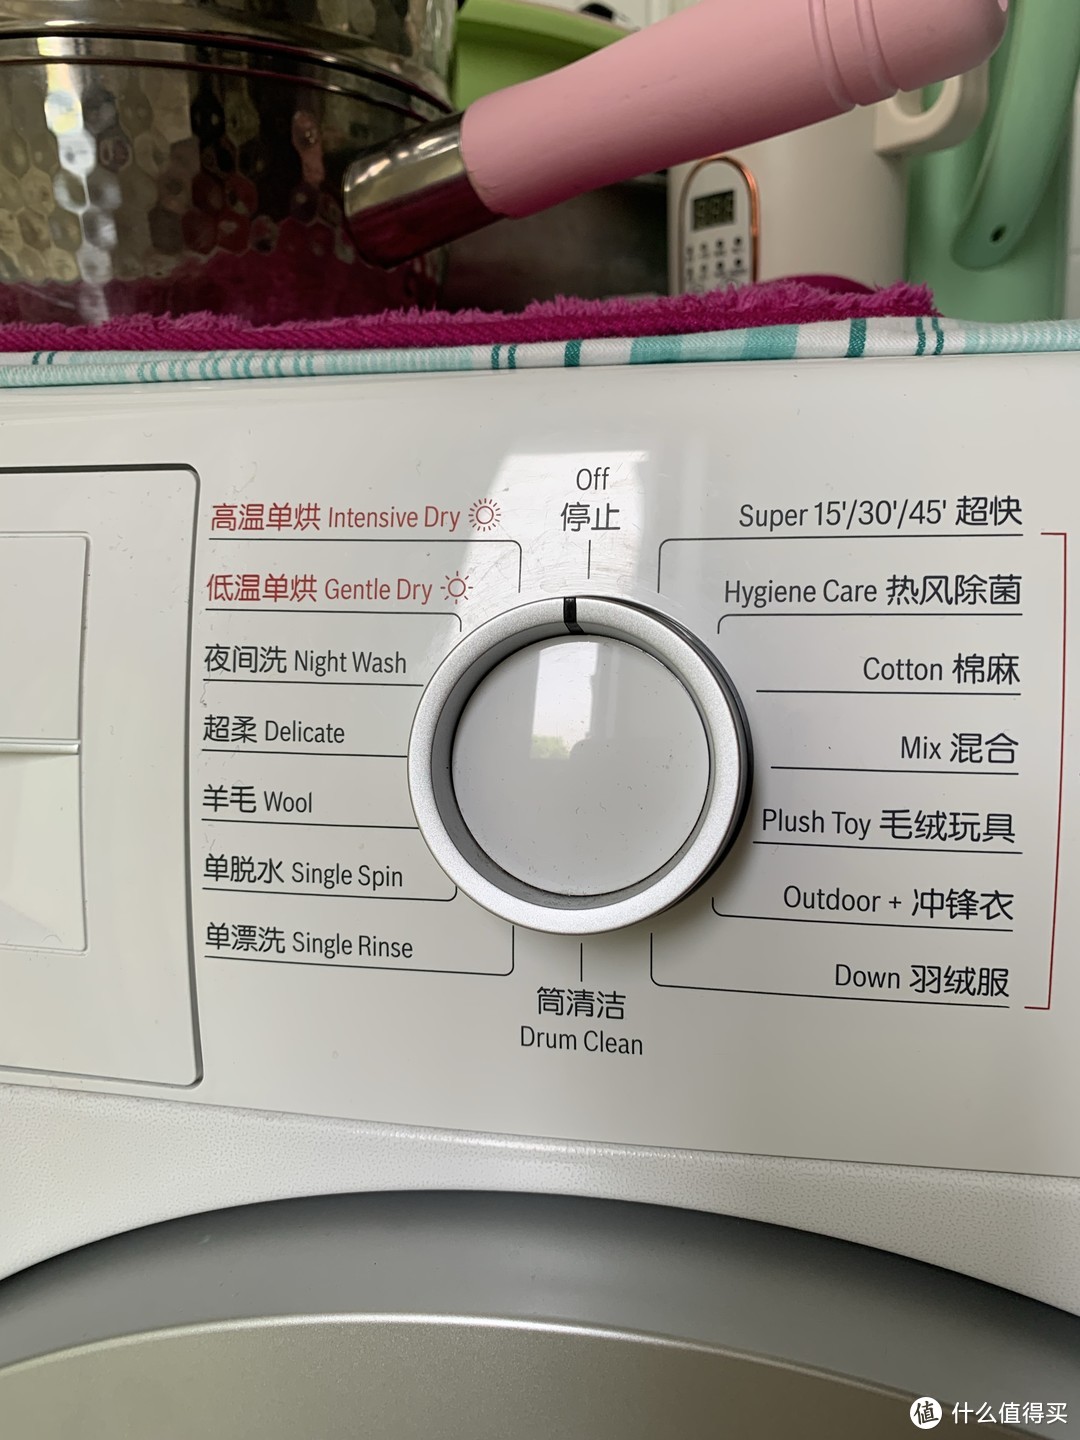 洗烘一体机有利也有弊，有条件的话还是不要选它